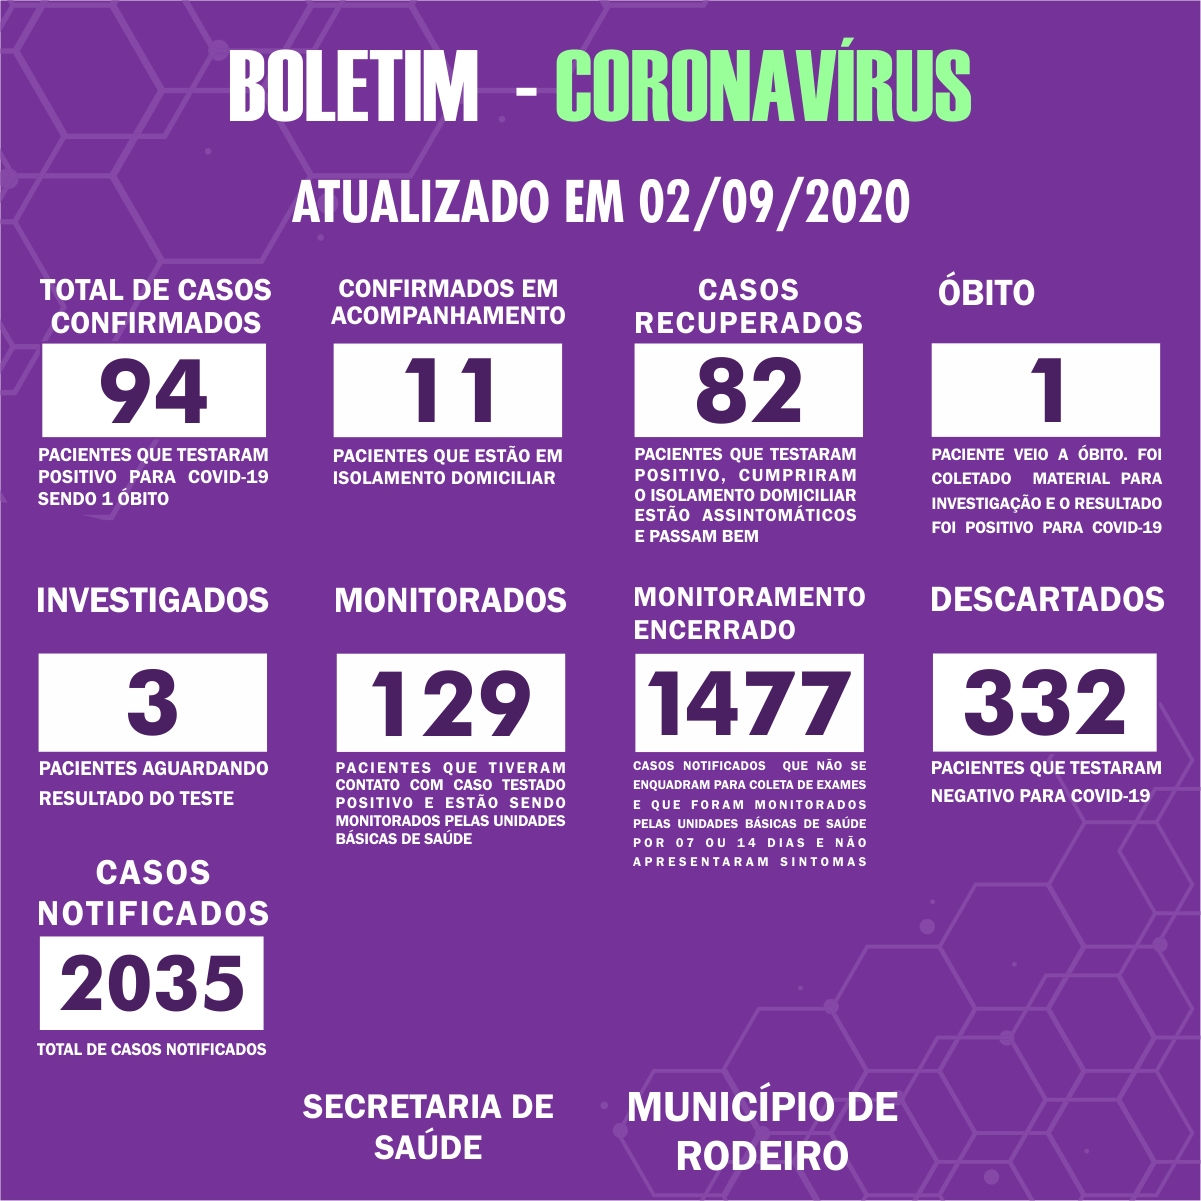 Boletim Epidemiológico do Município de Rodeiro sobre coronavírus, atualizado em 02/09/2020